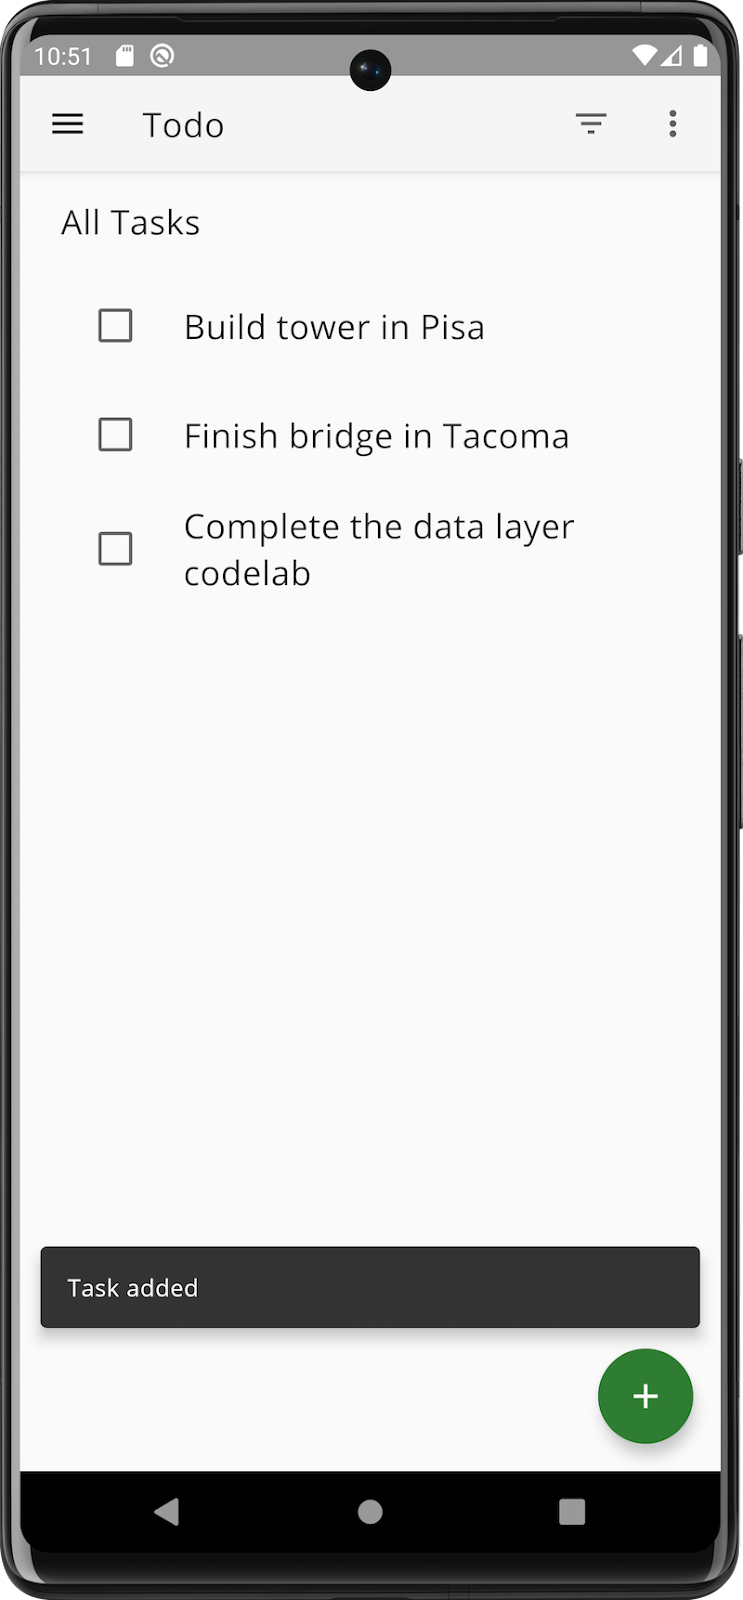 Tela de tarefas do app após a adição de uma tarefa.